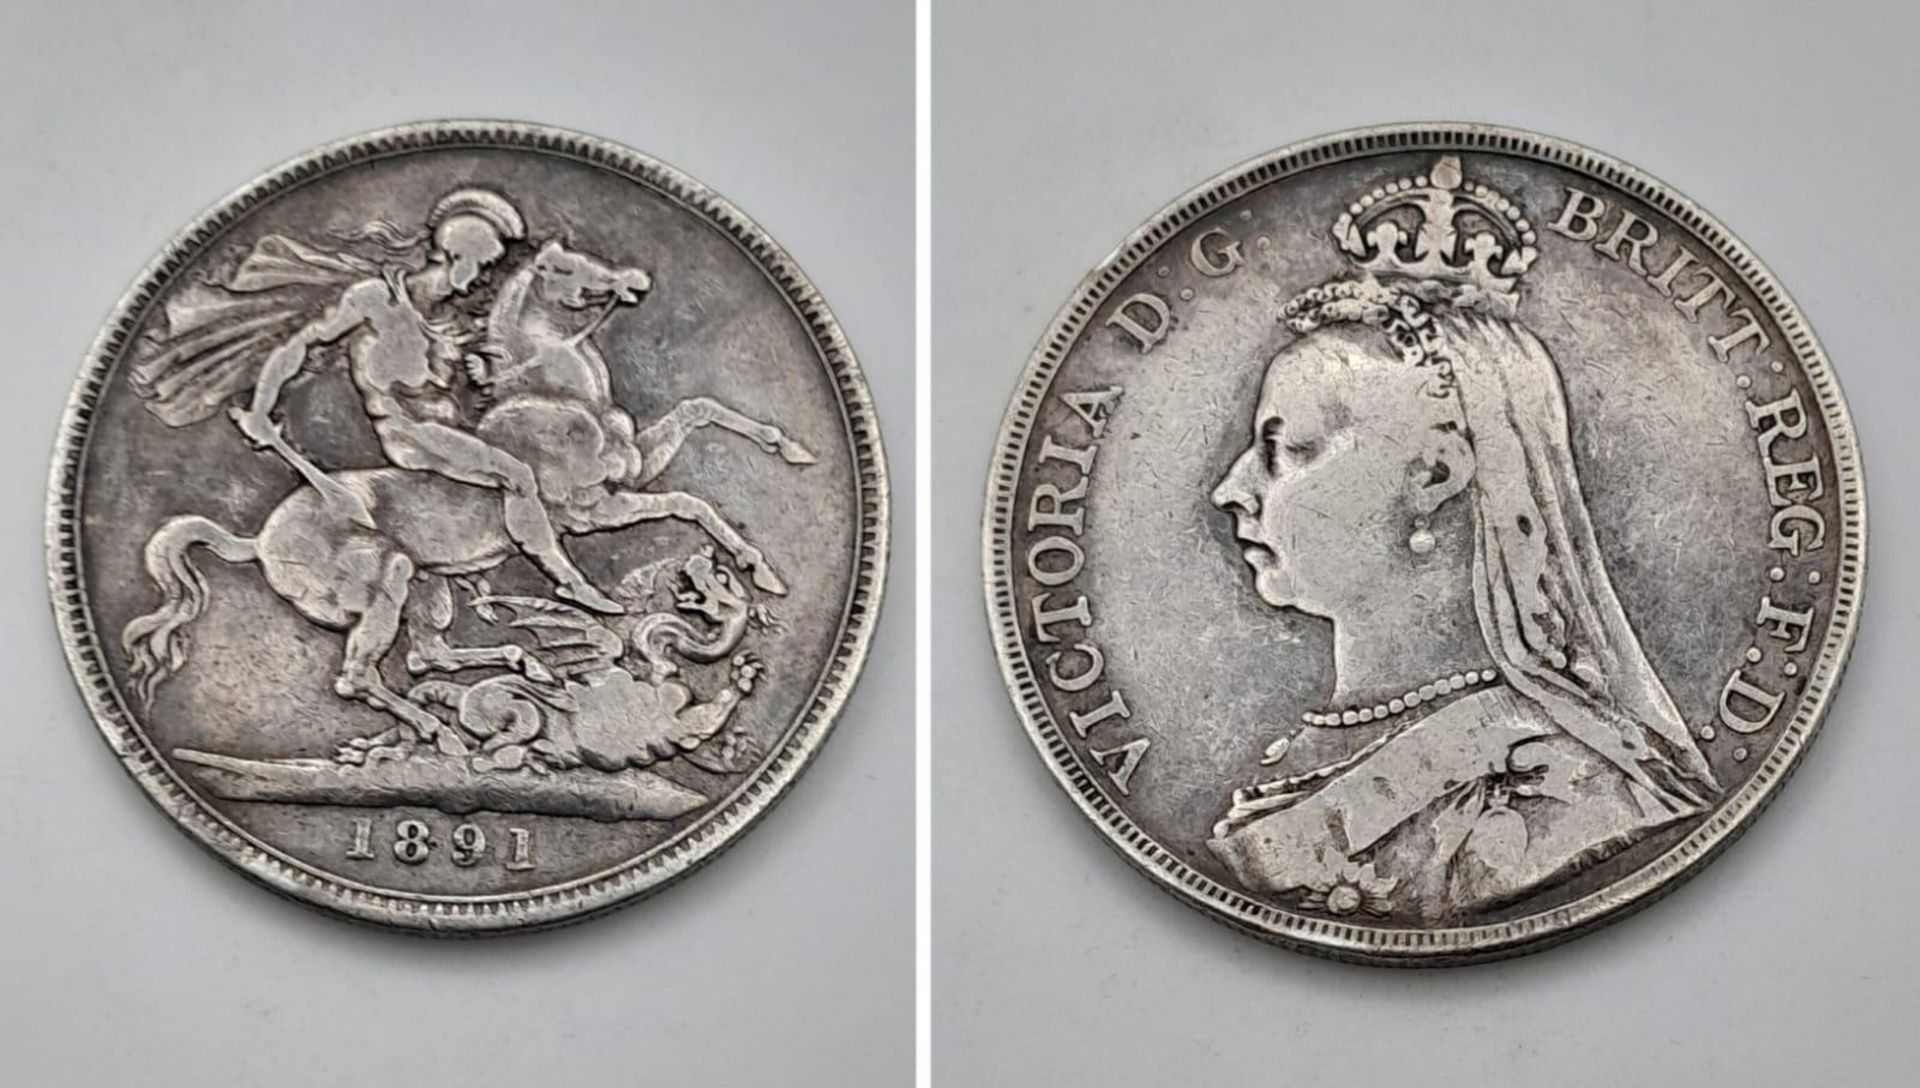 An 1891 Queen Victoria Silver Crown Coin. VF grade but please see photos.